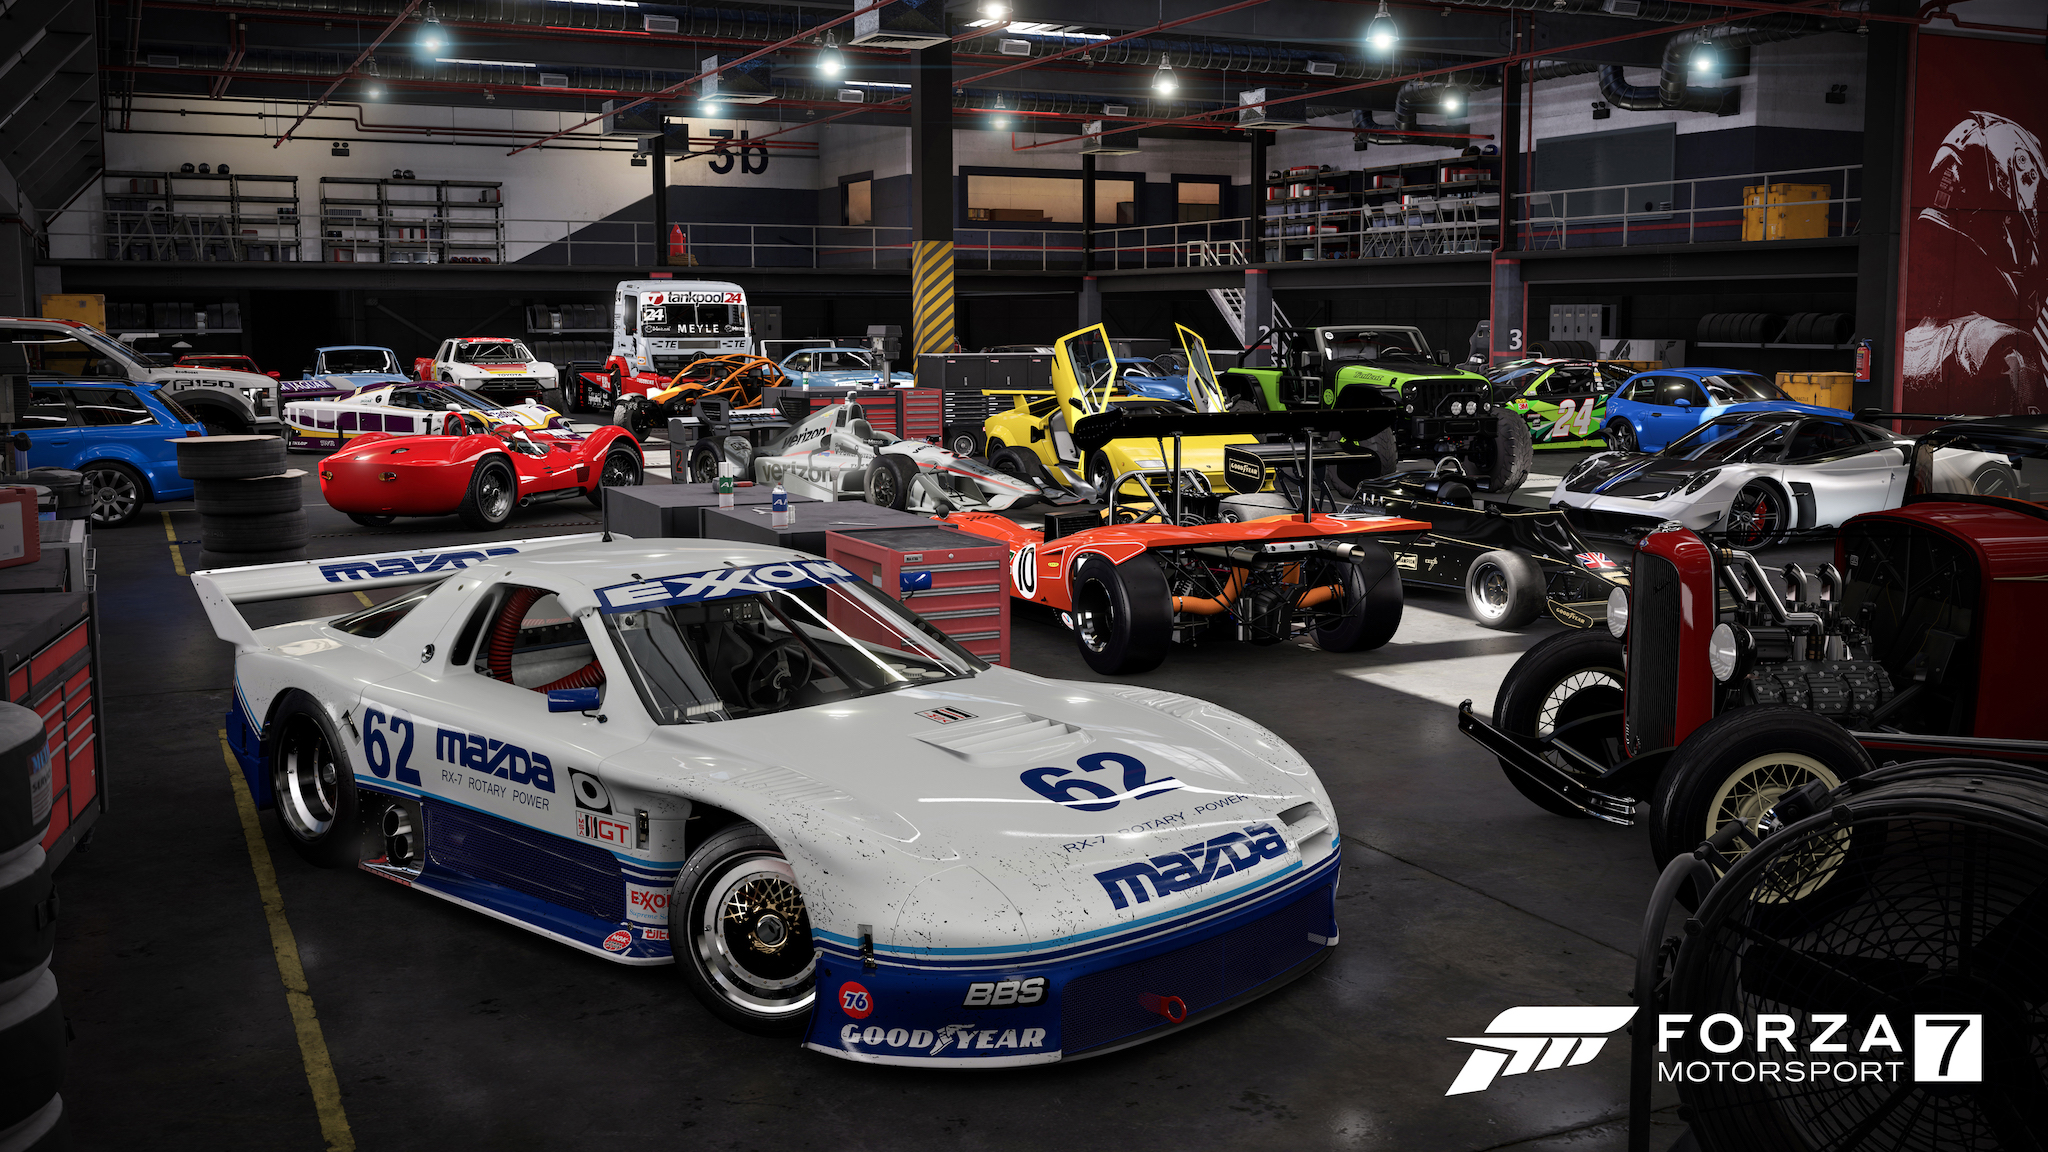 ZuidAmerika rollen Anzai Forza Motorsport 7 reviewed: Racing fun for everyone | Ars Technica